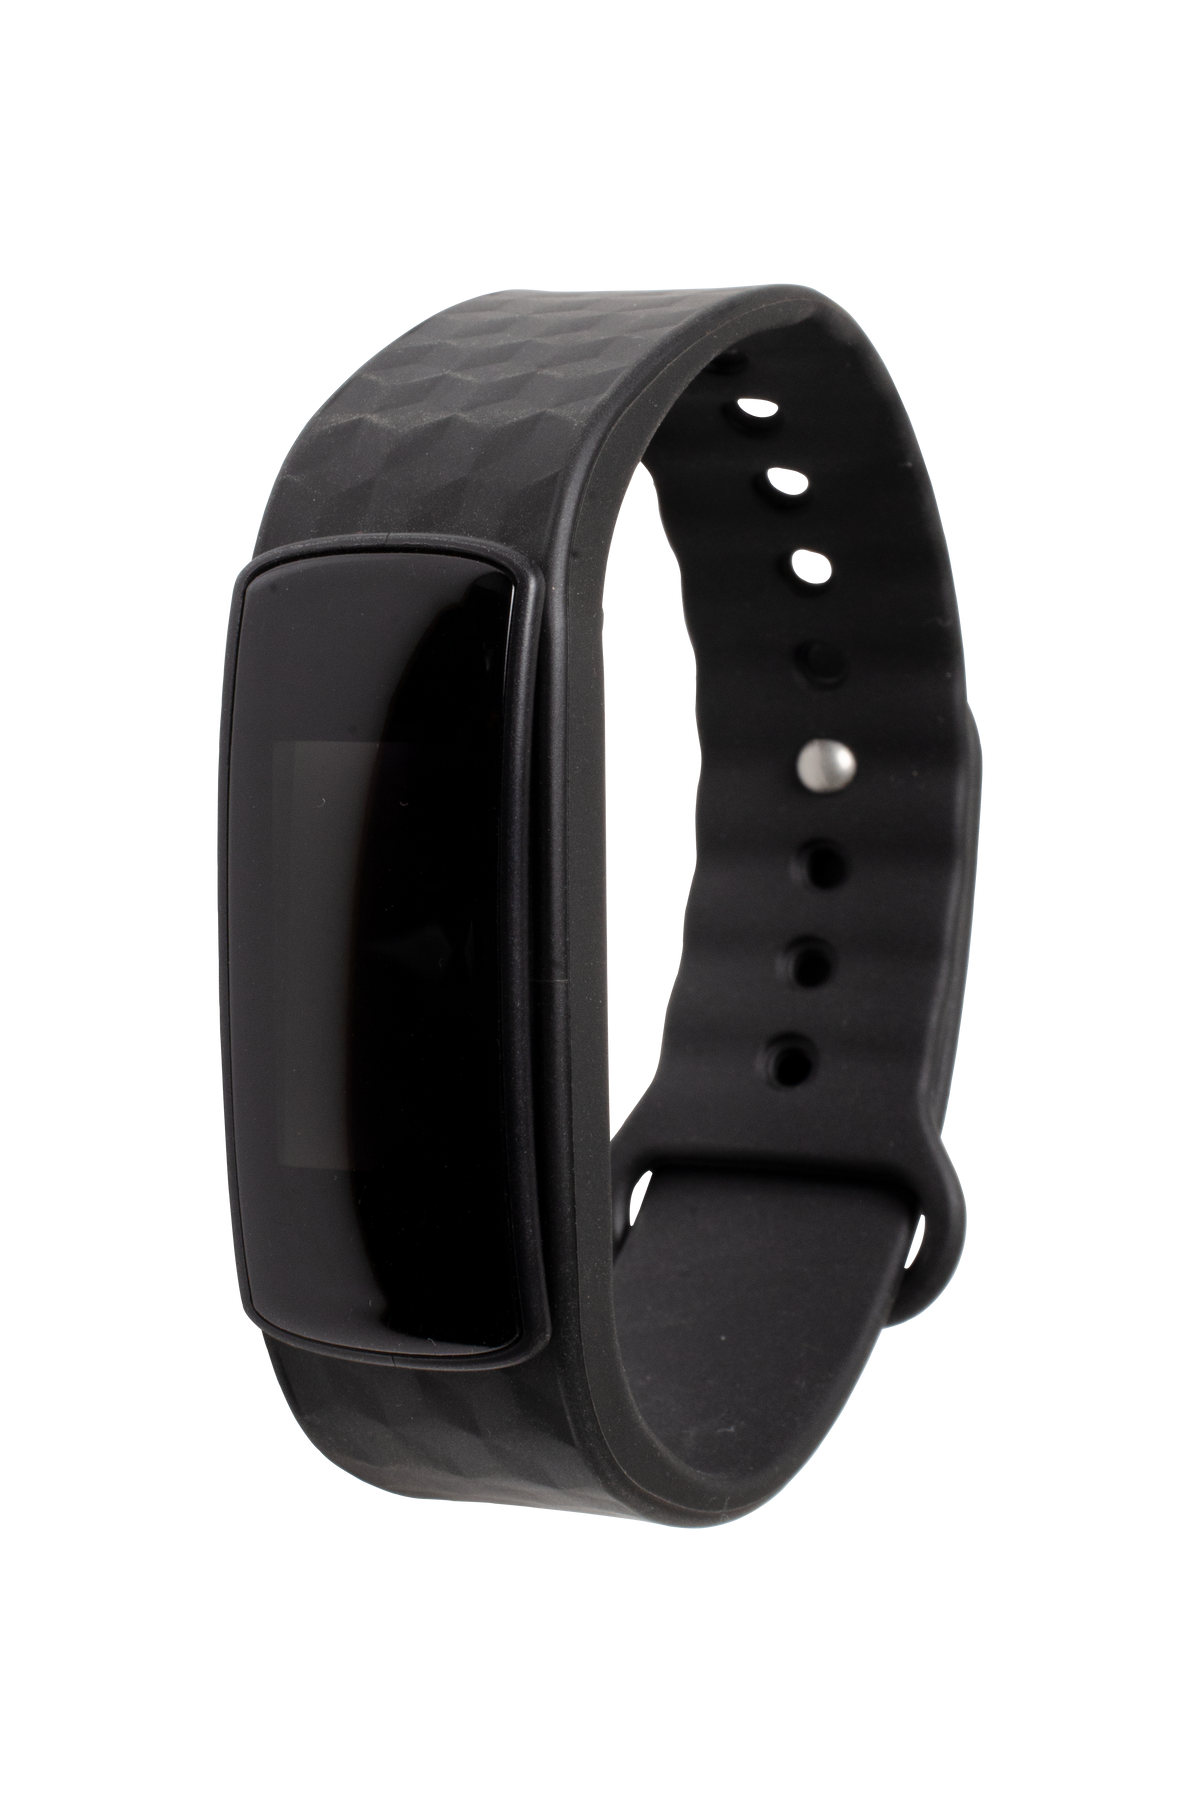 Smartband Fitness con monitor de actividades conexión Bluetooth 4.0